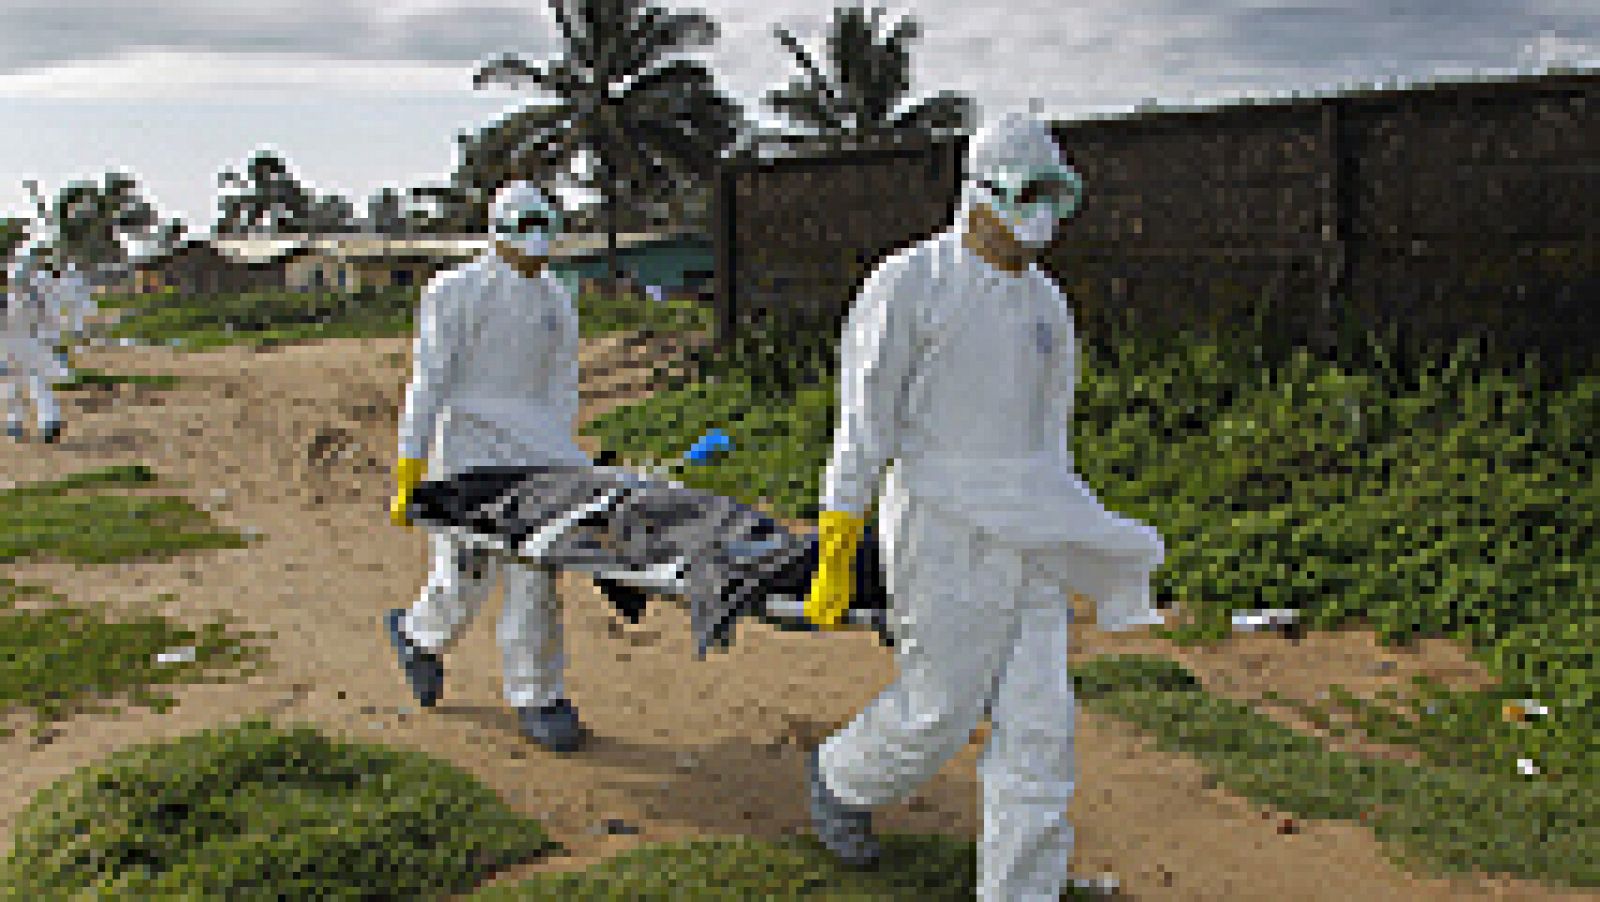  El número de infectados por ébola en las capitales de los tres países más afectados -Liberia, Sierra Leona, Guinea Conakry- se ha incrementado en las últimas semanas, según ha afirmado en rueda de prensa Bruce Aylward, director general adjunto de la Organización Mundial de la Salud (OMS).